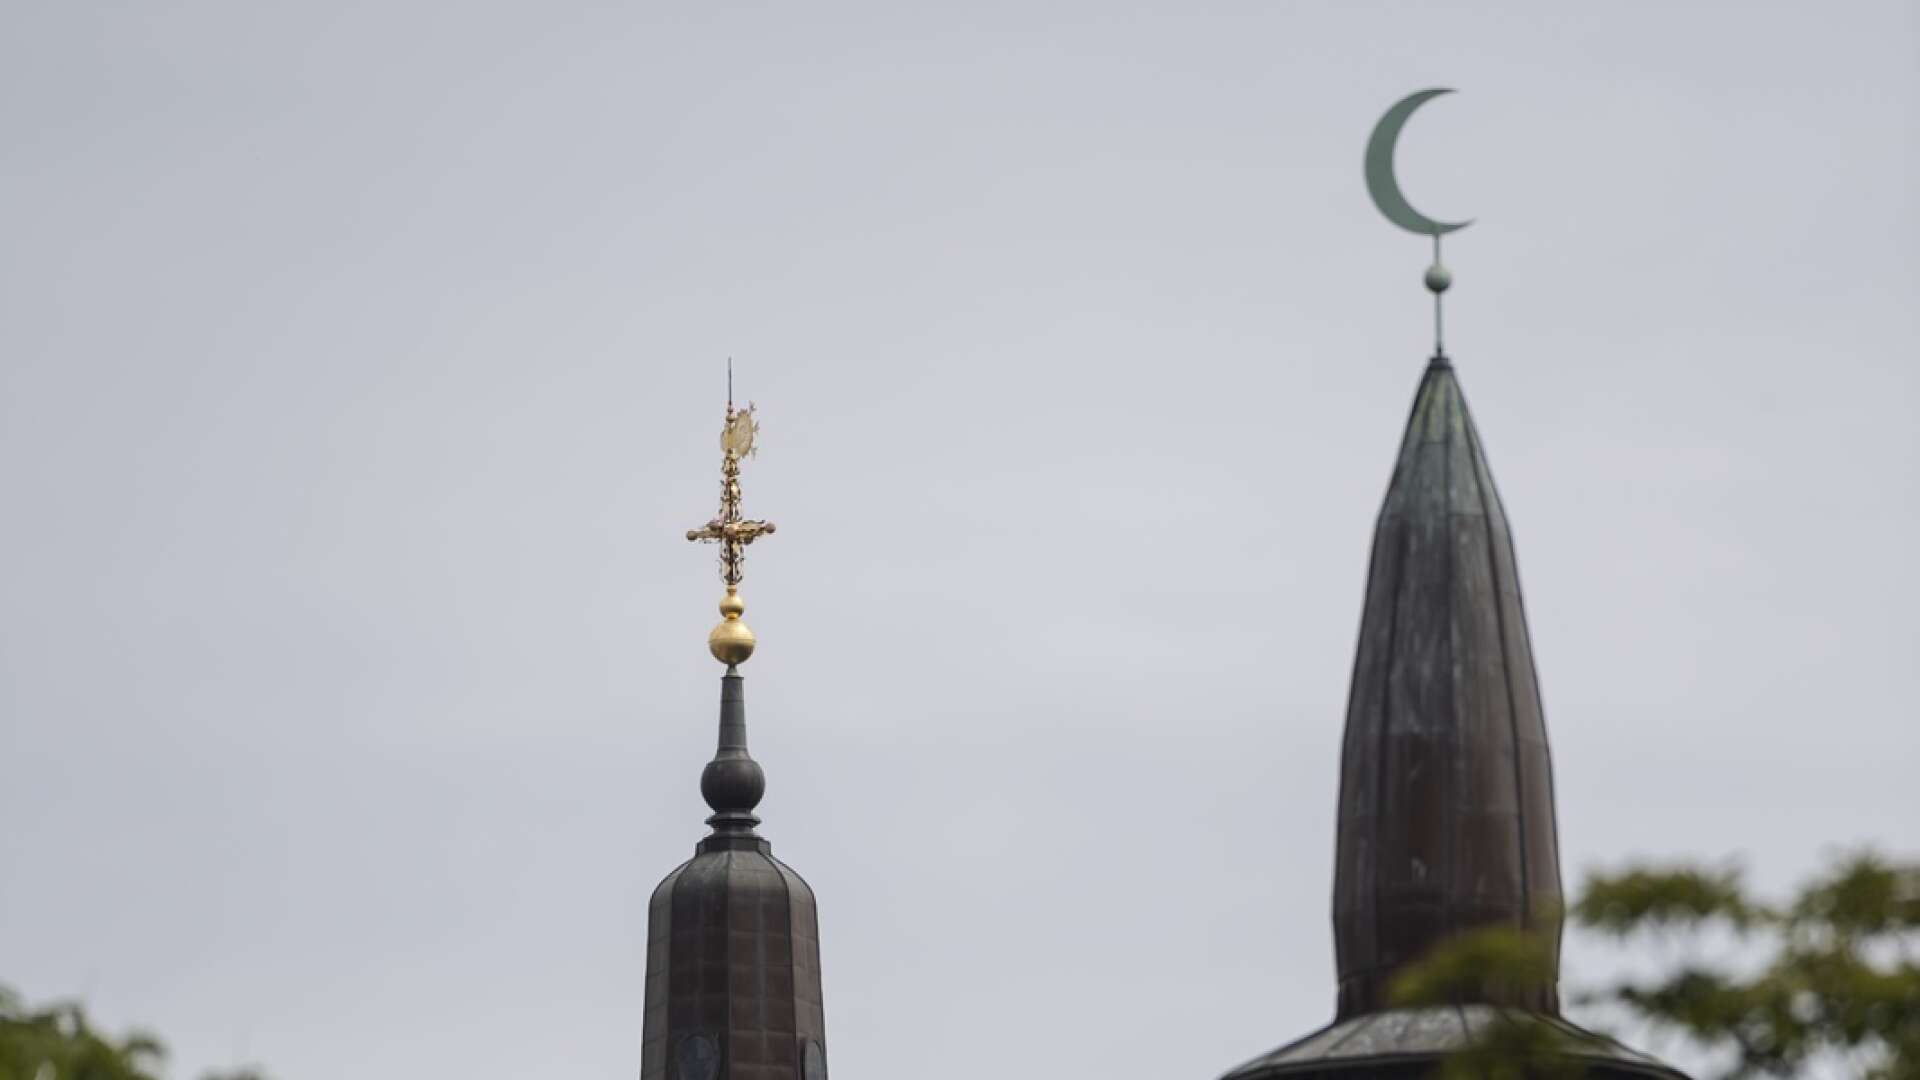 Däremot är det helt klart att vi behöver ha betydligt bättre koll på eventuellt fuffens som pågår i och runt moskéer eller kyrkor, skriver Carolin Dahlman.